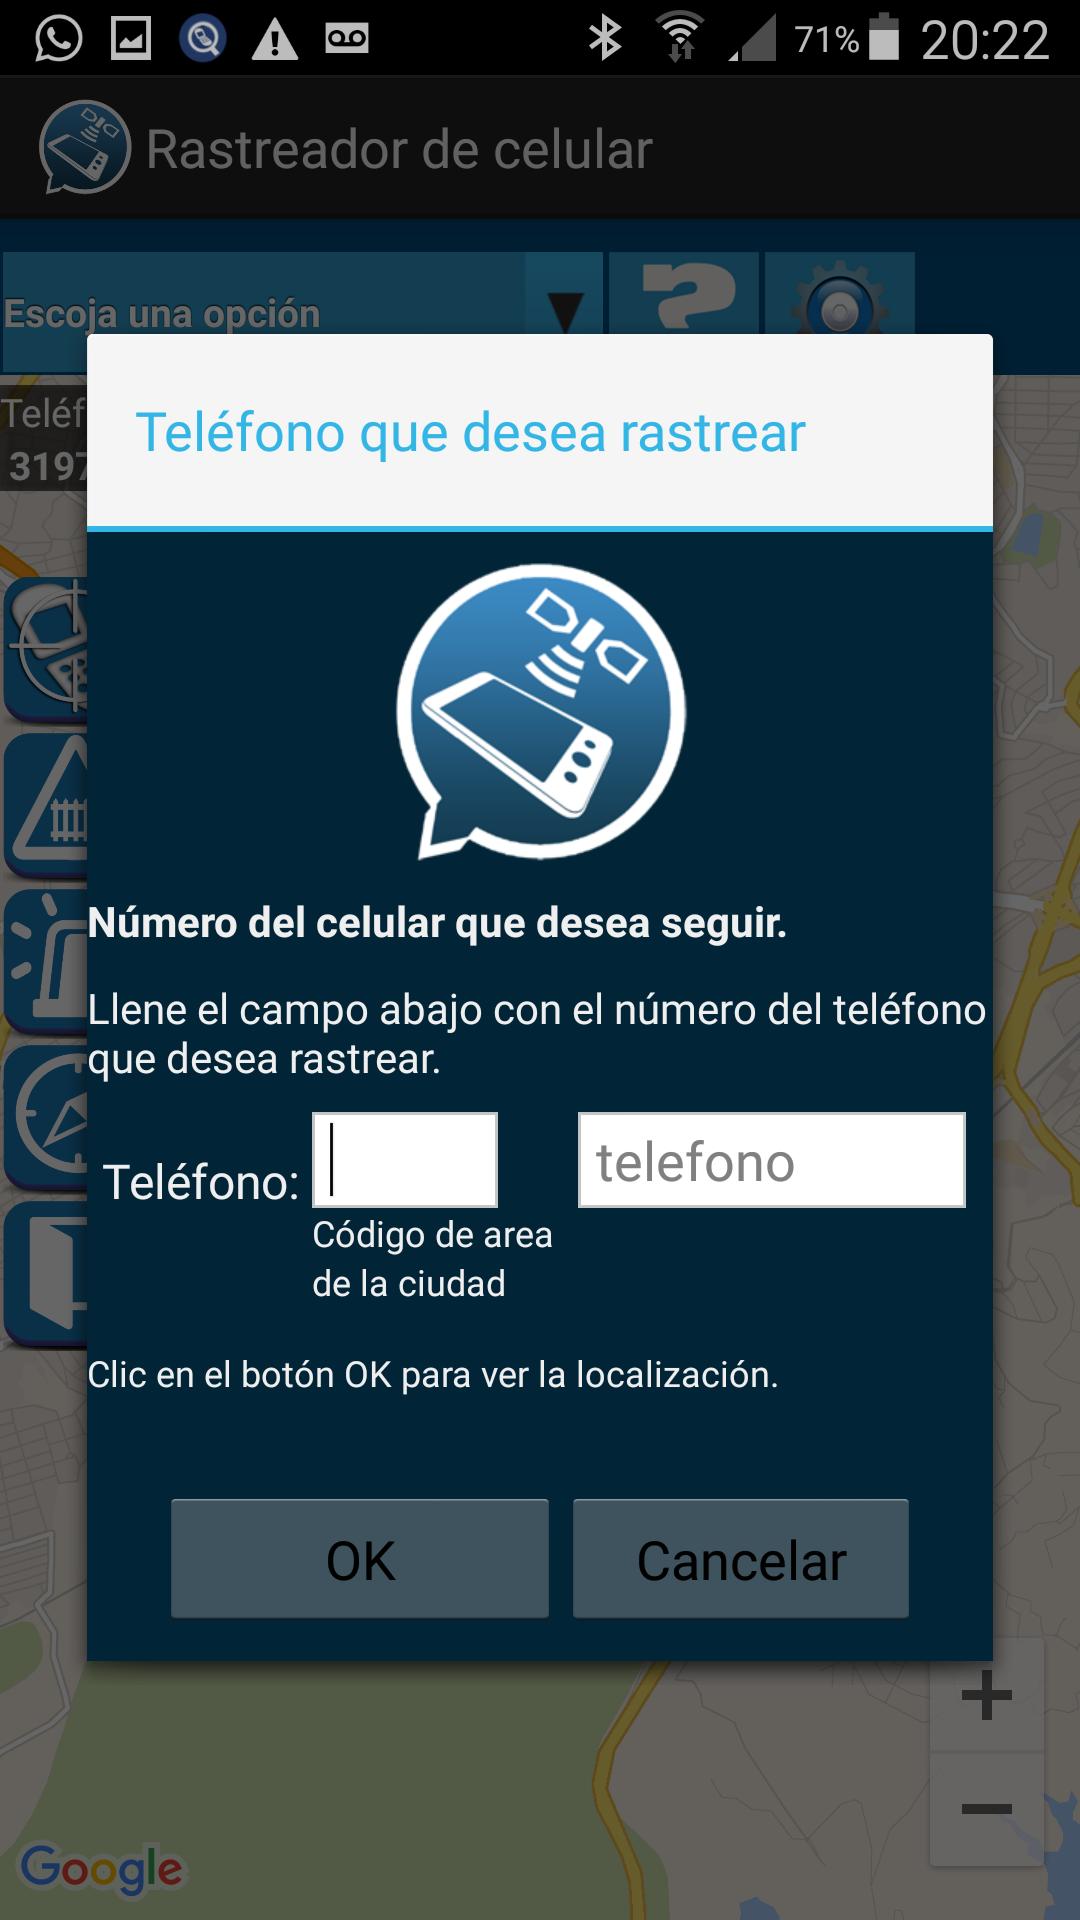 Rastrear Celular Por el Numero for Android - APK Download